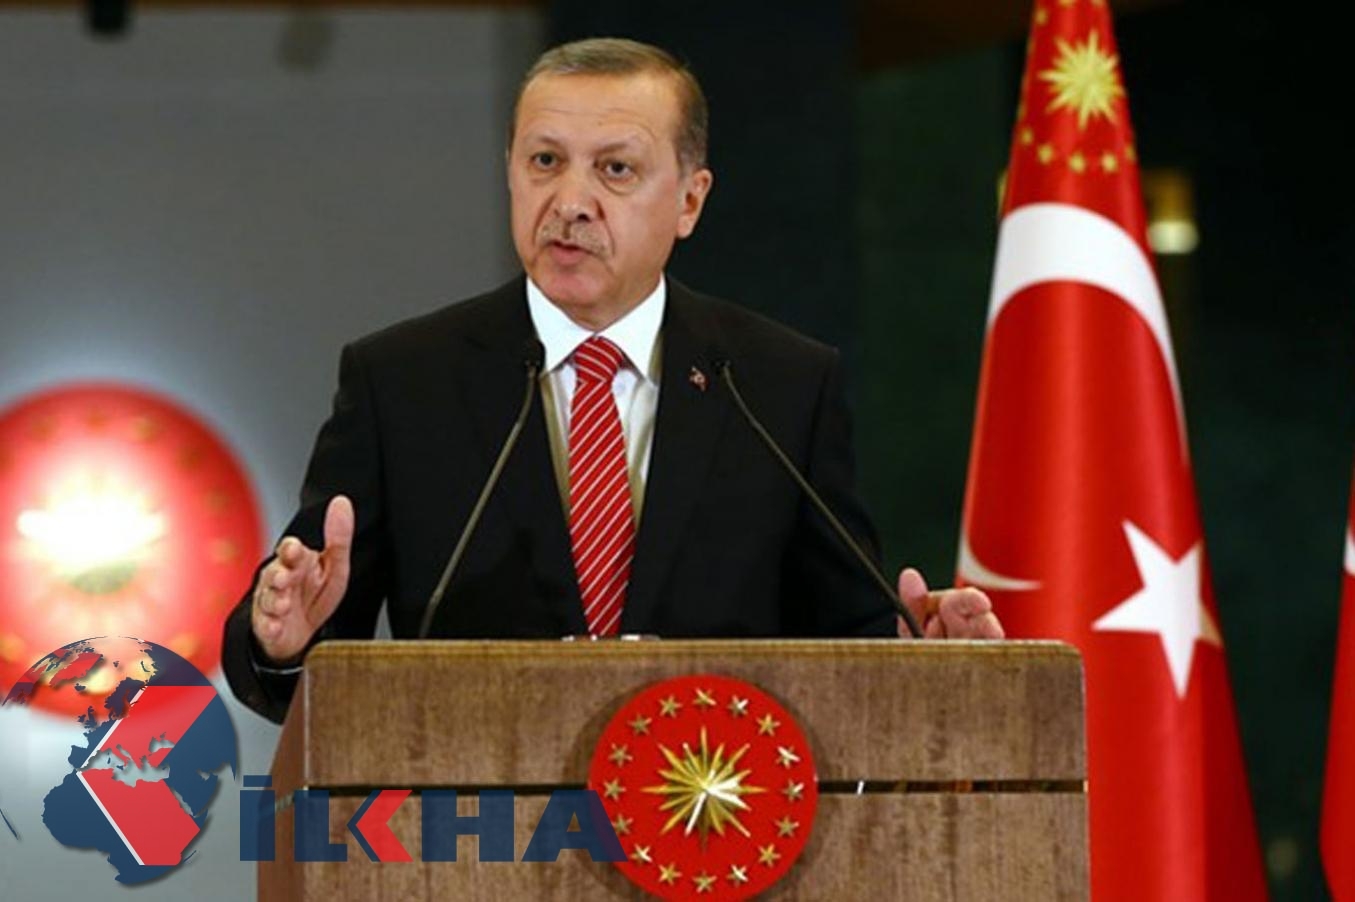 Erdoğan Gaziantep'teki Kardeşlik mitingine katılacak